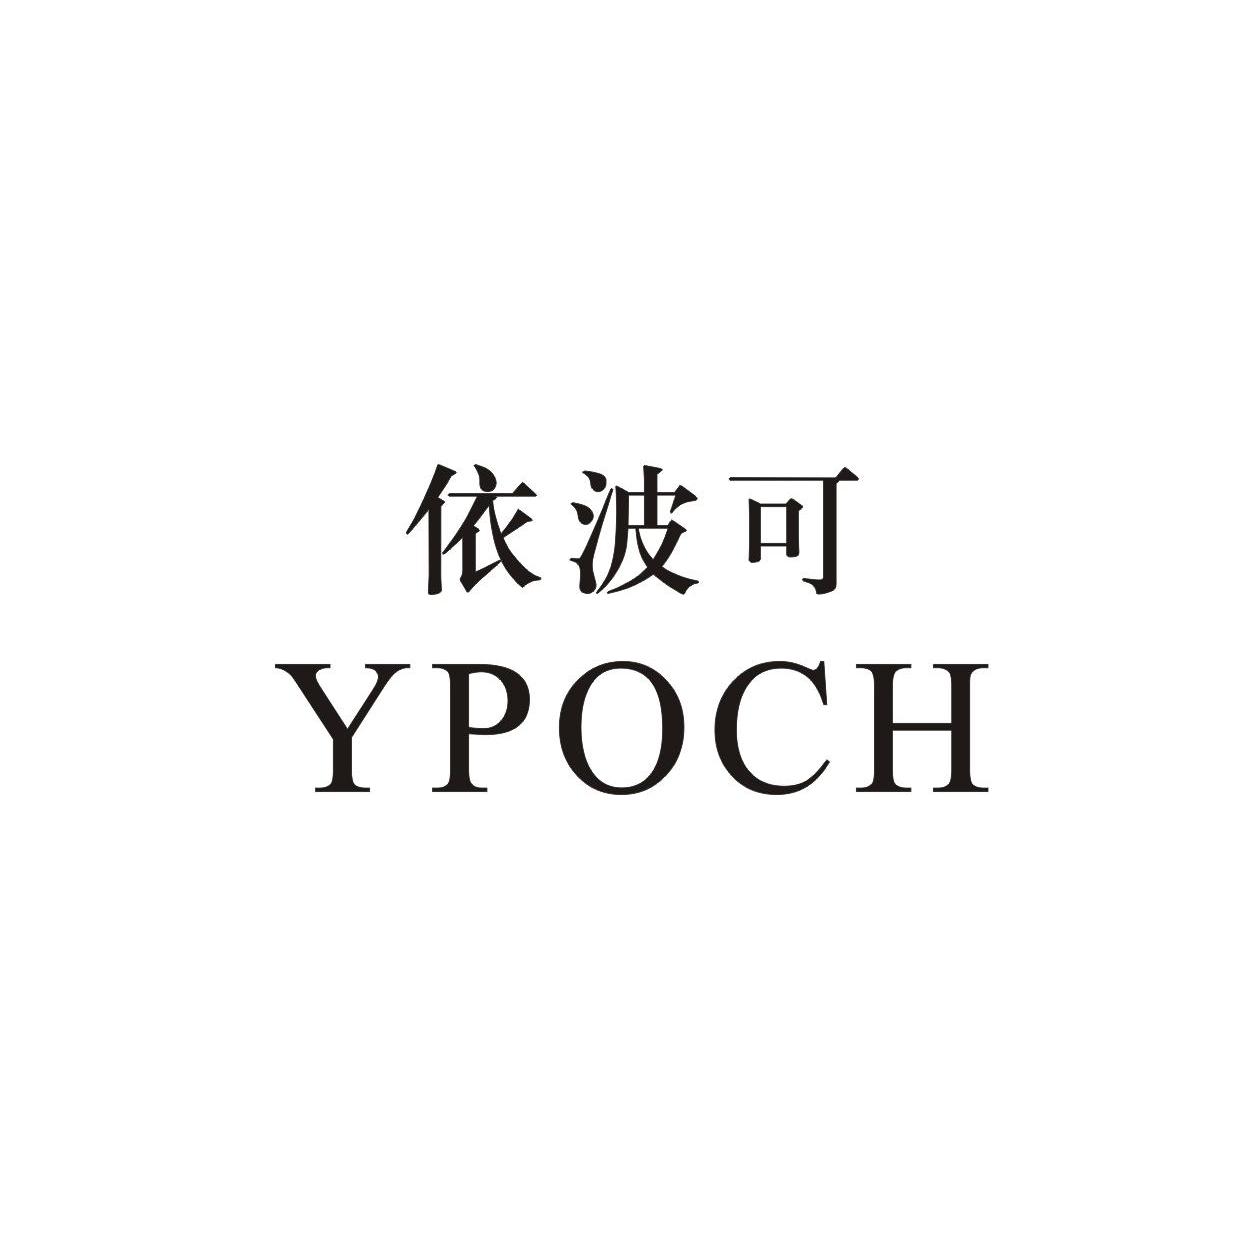 依波logo图片图片